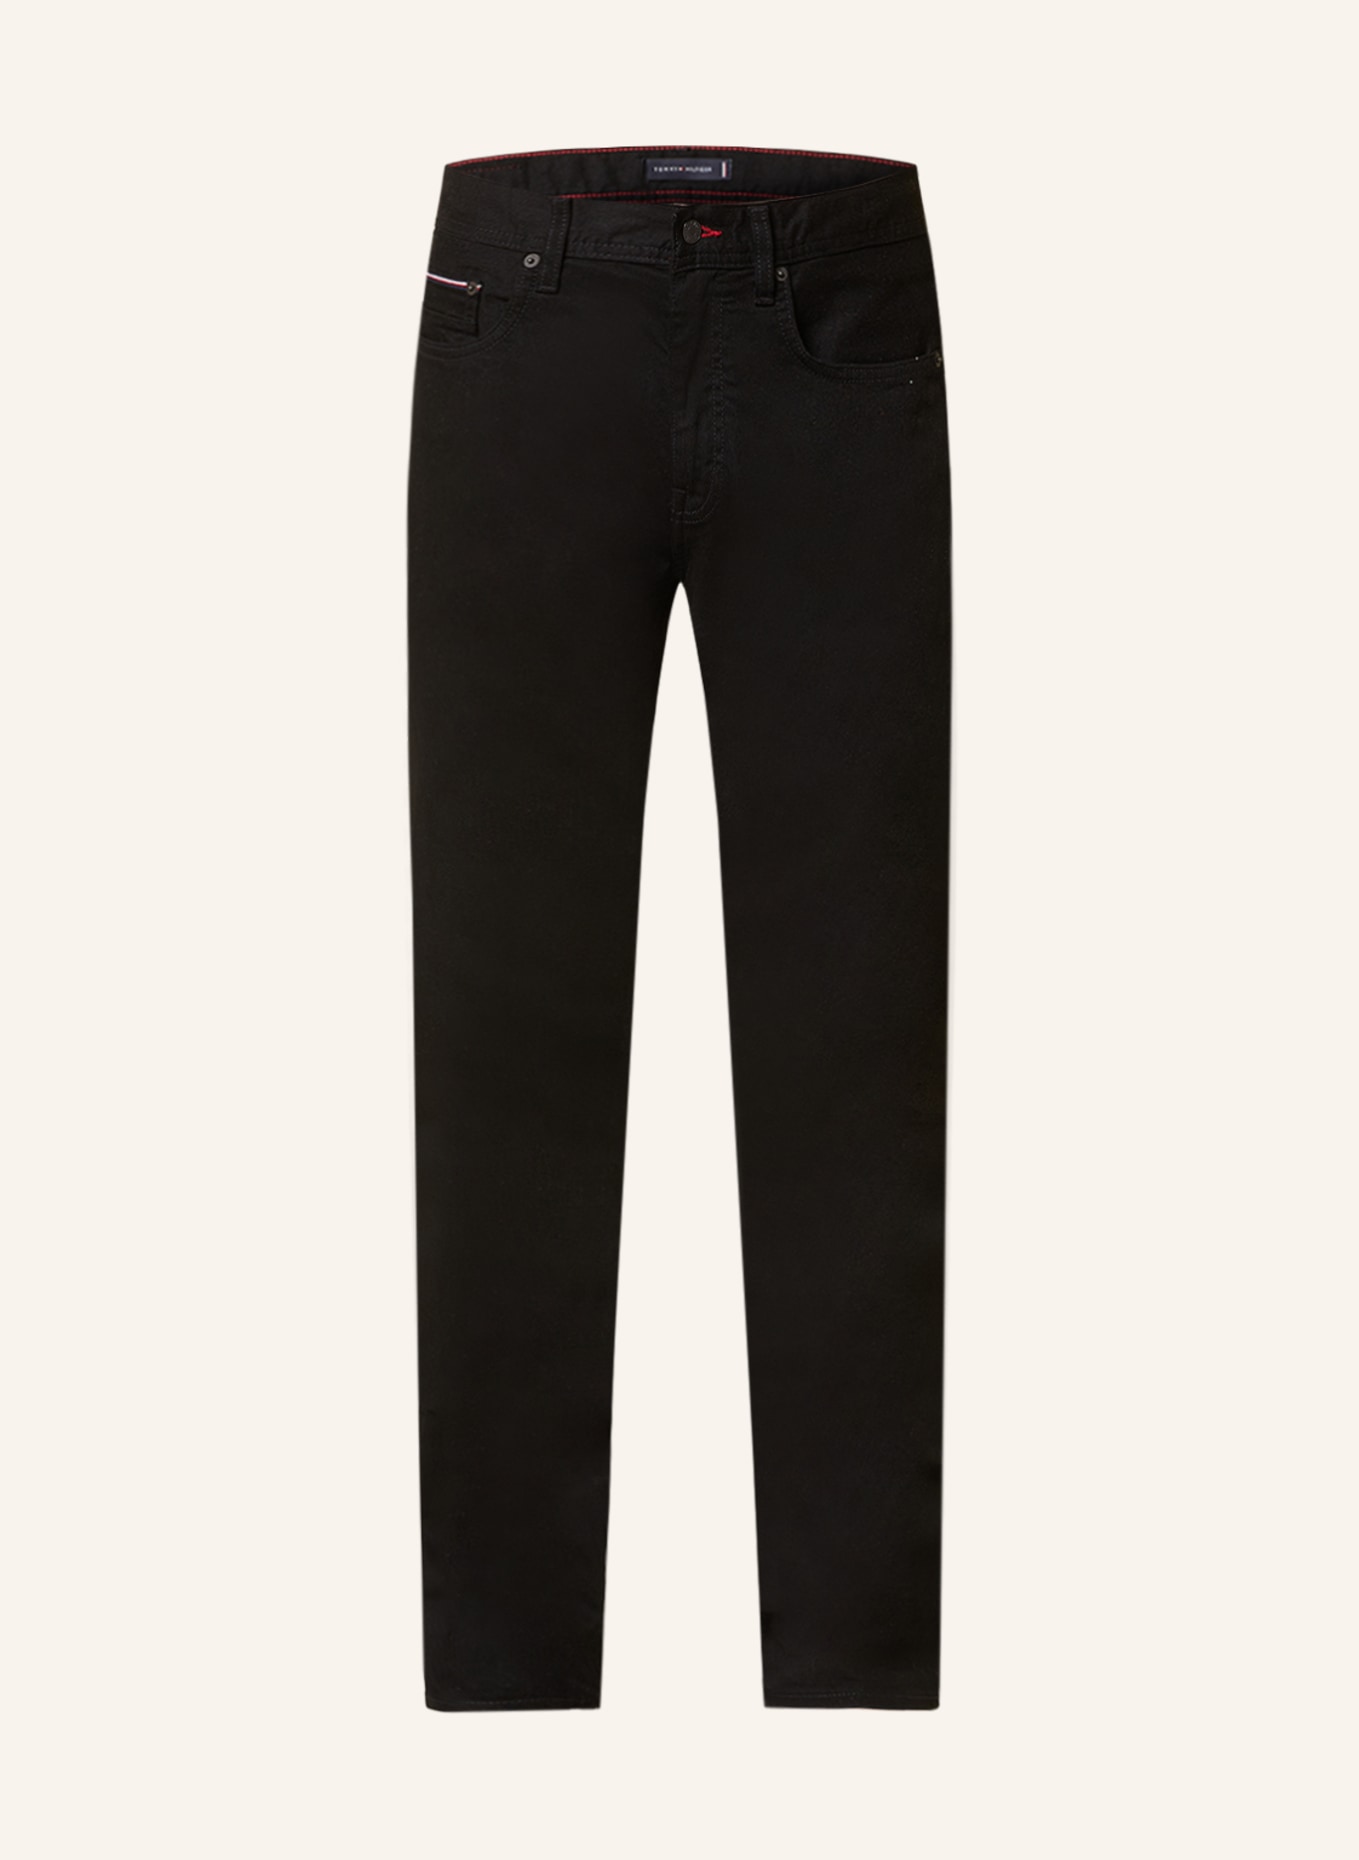 TOMMY HILFIGER Jeans Straight Fit, Farbe: 1B8 Detroit Black (Bild 1)